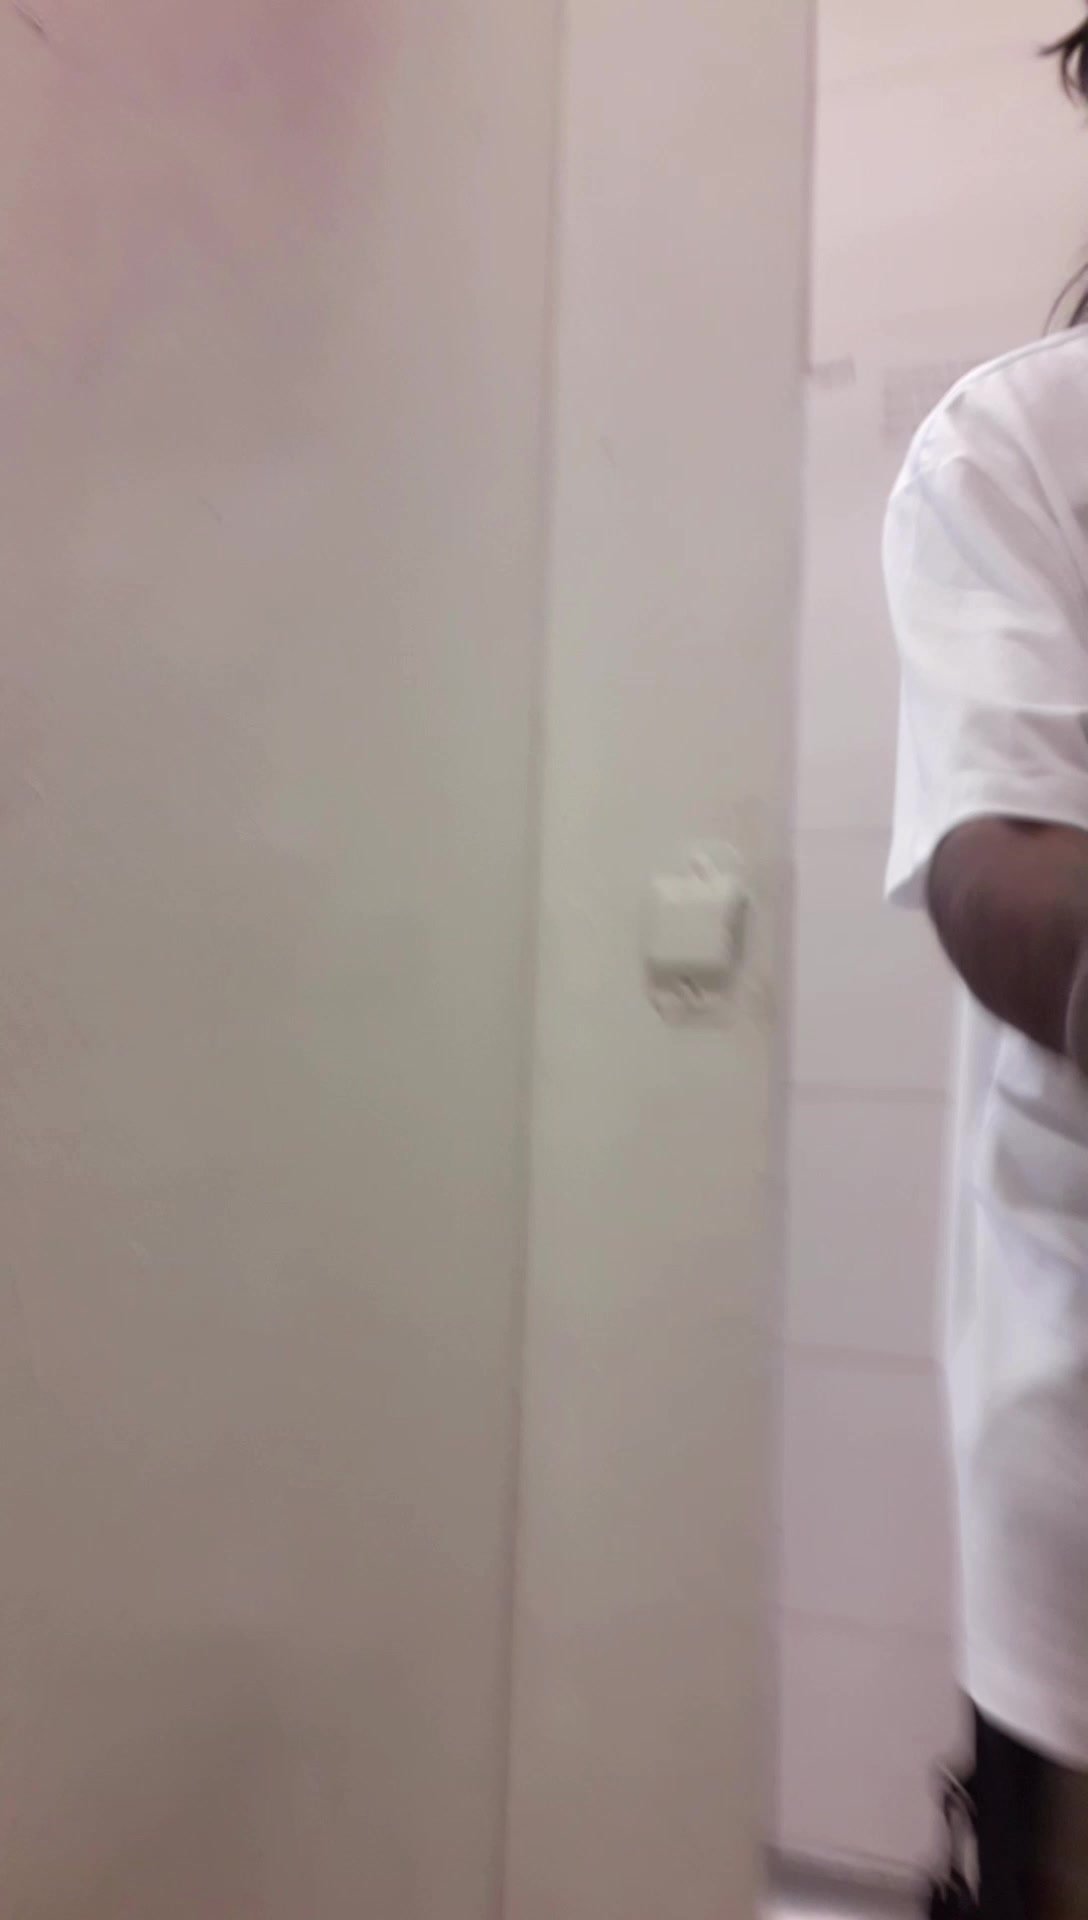 Strangers Opened The Public Toilet Door - video 22